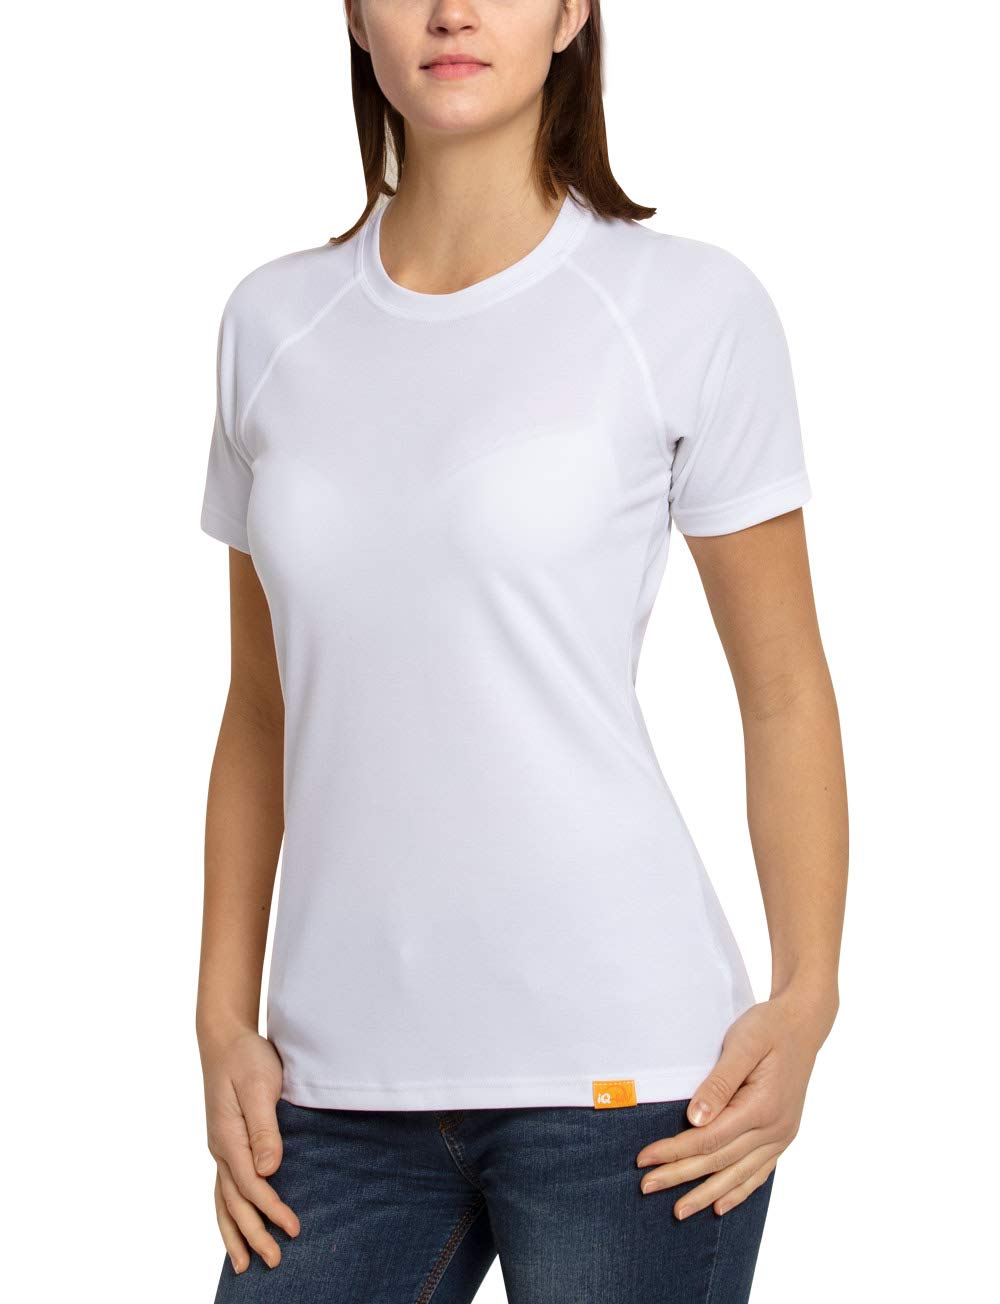 iQ-UV Damen Sonnenschutz T-Shirt, White, 2XL